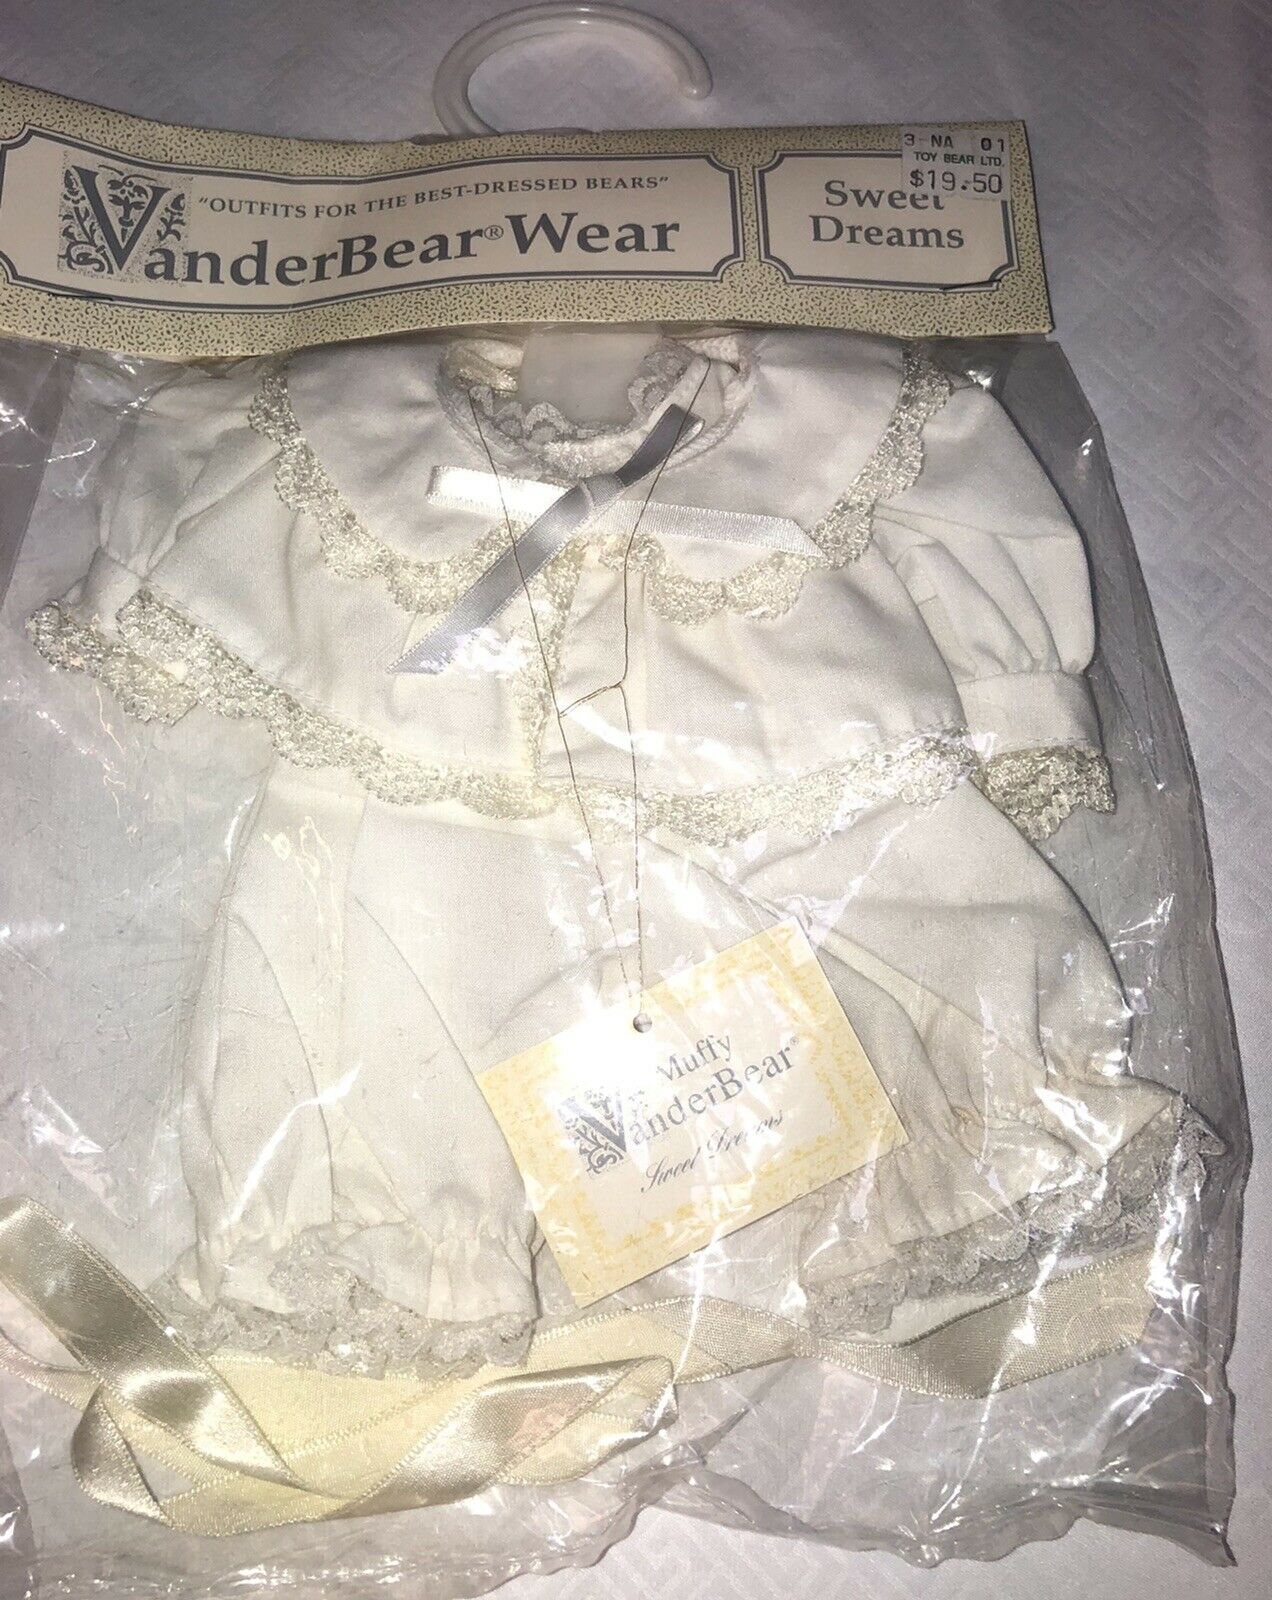 Muffy Bear Vanderbear Wear Sweet Dreams Outfit Retired Nos 1991